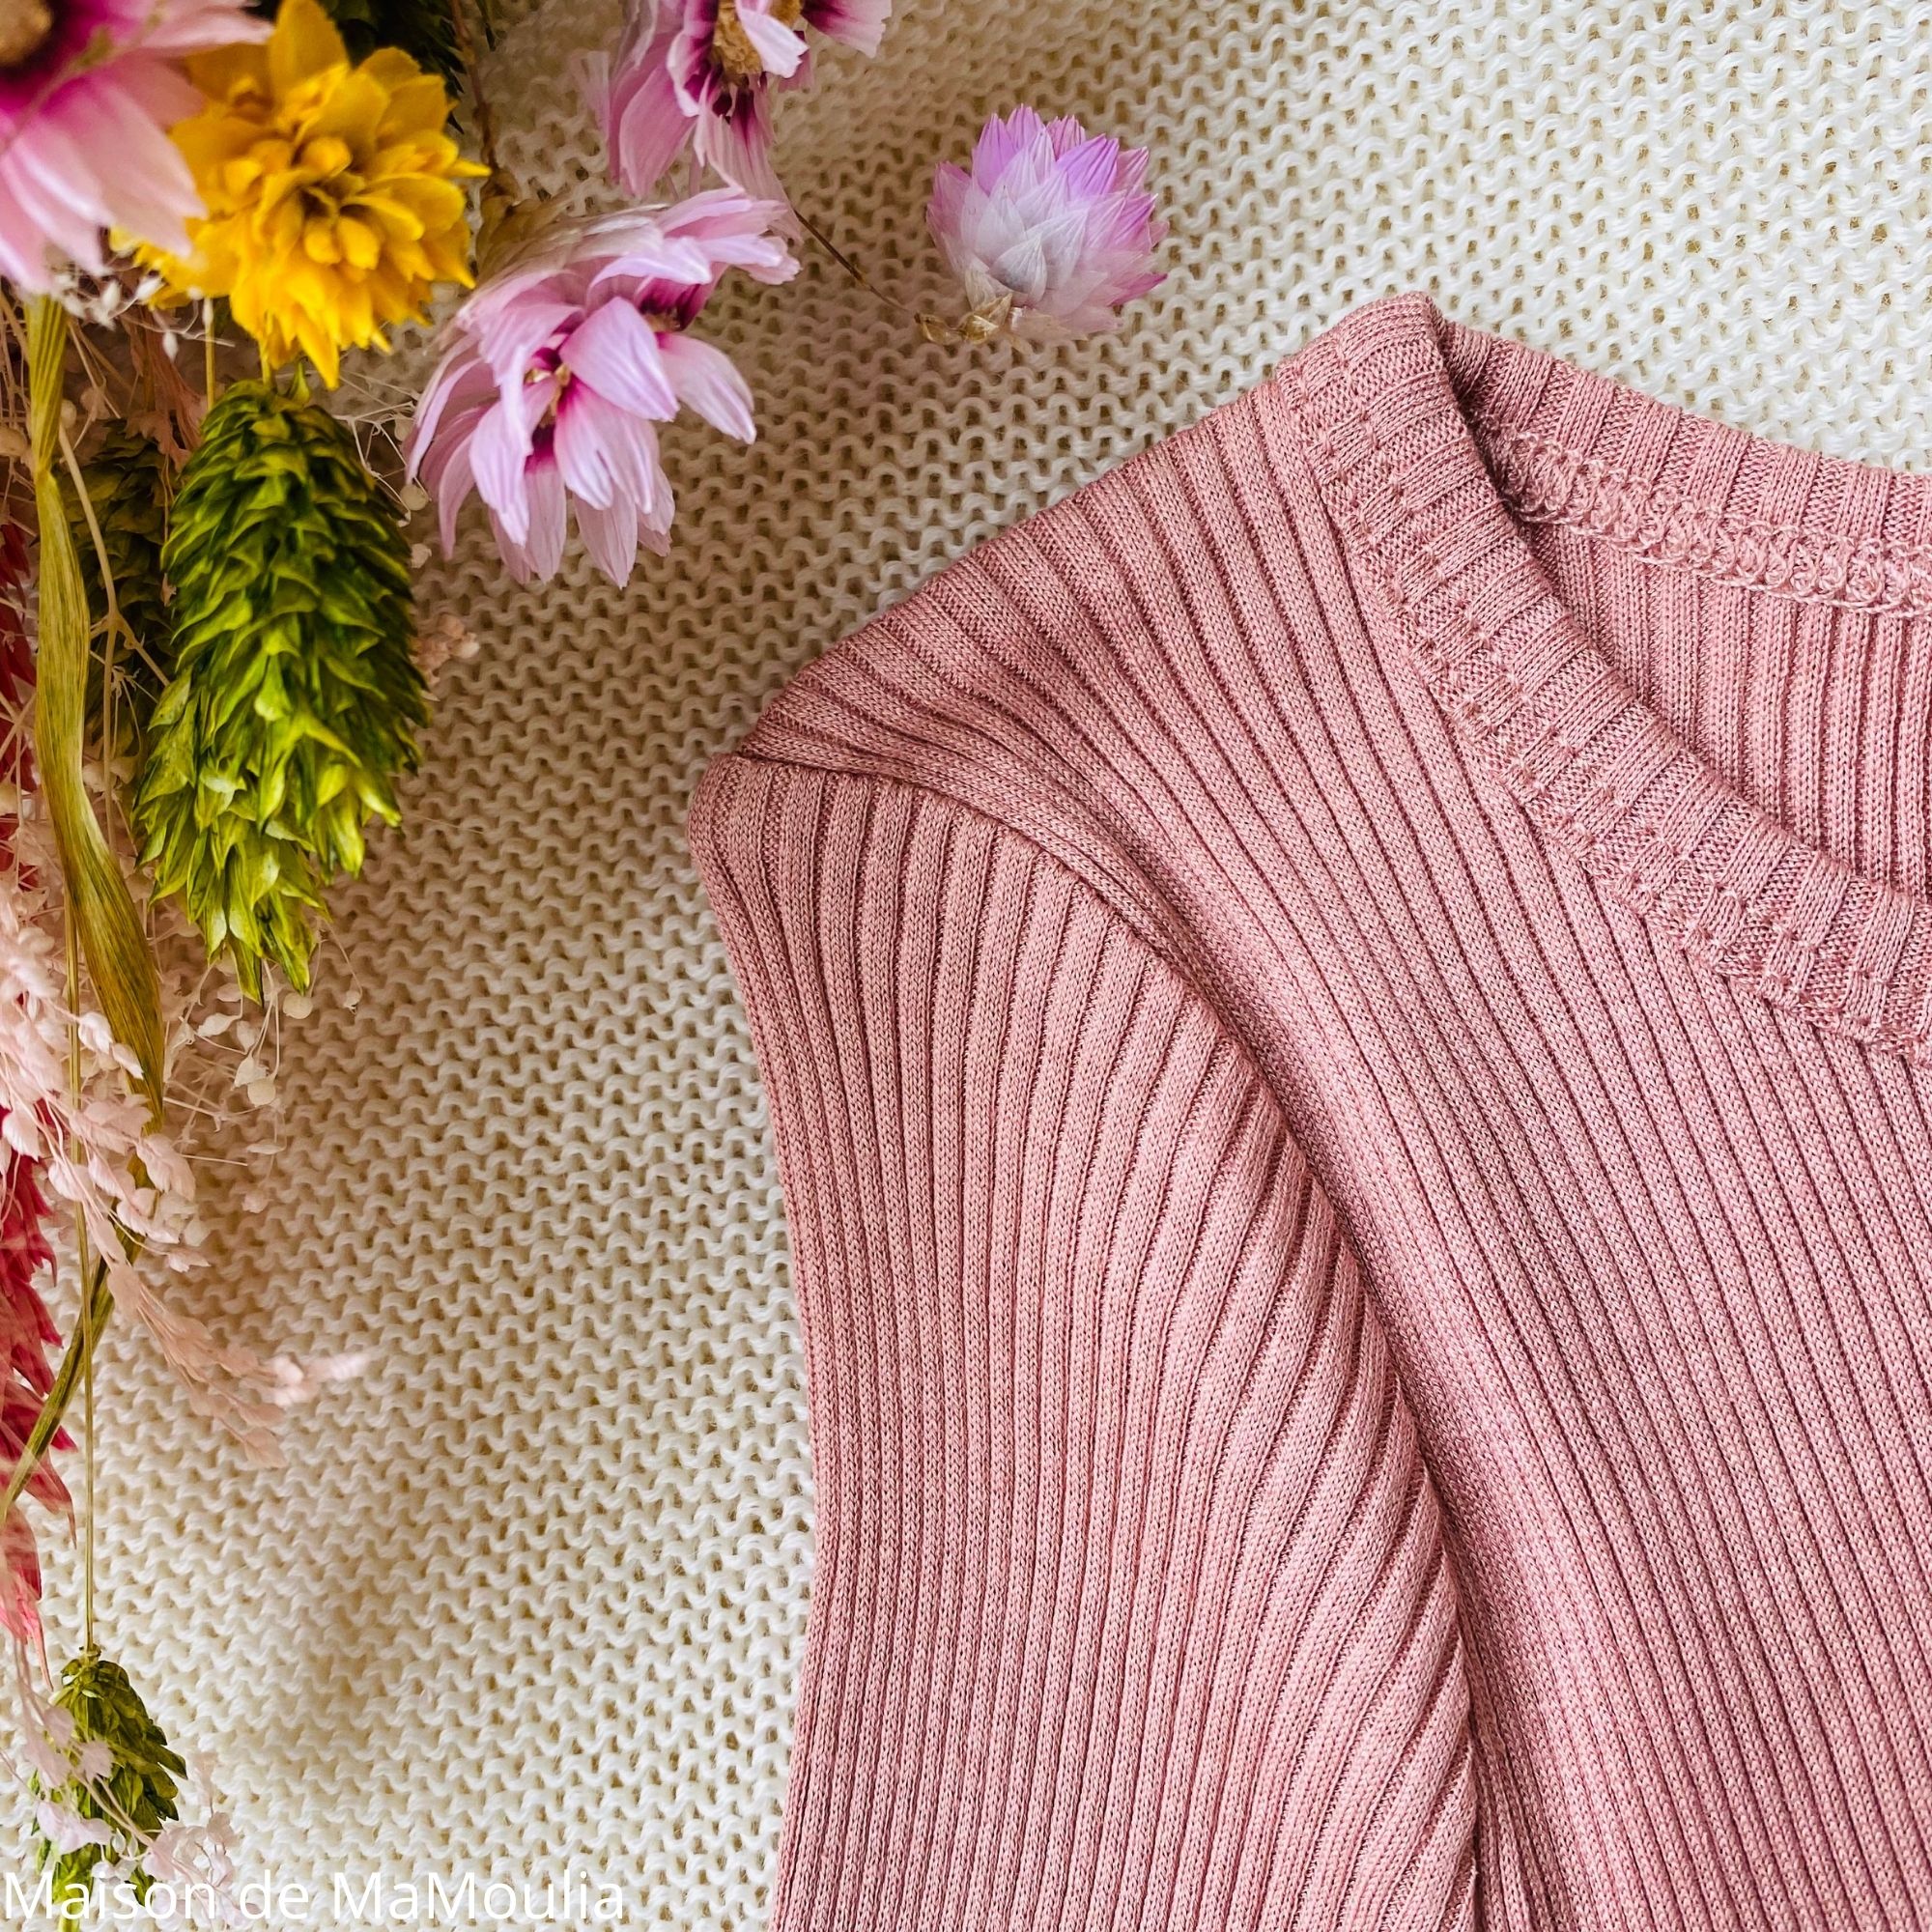 bergen-tshirt-enfant-soie-coton-minimalisma- maison-de-mamoulia-dahlia-rose